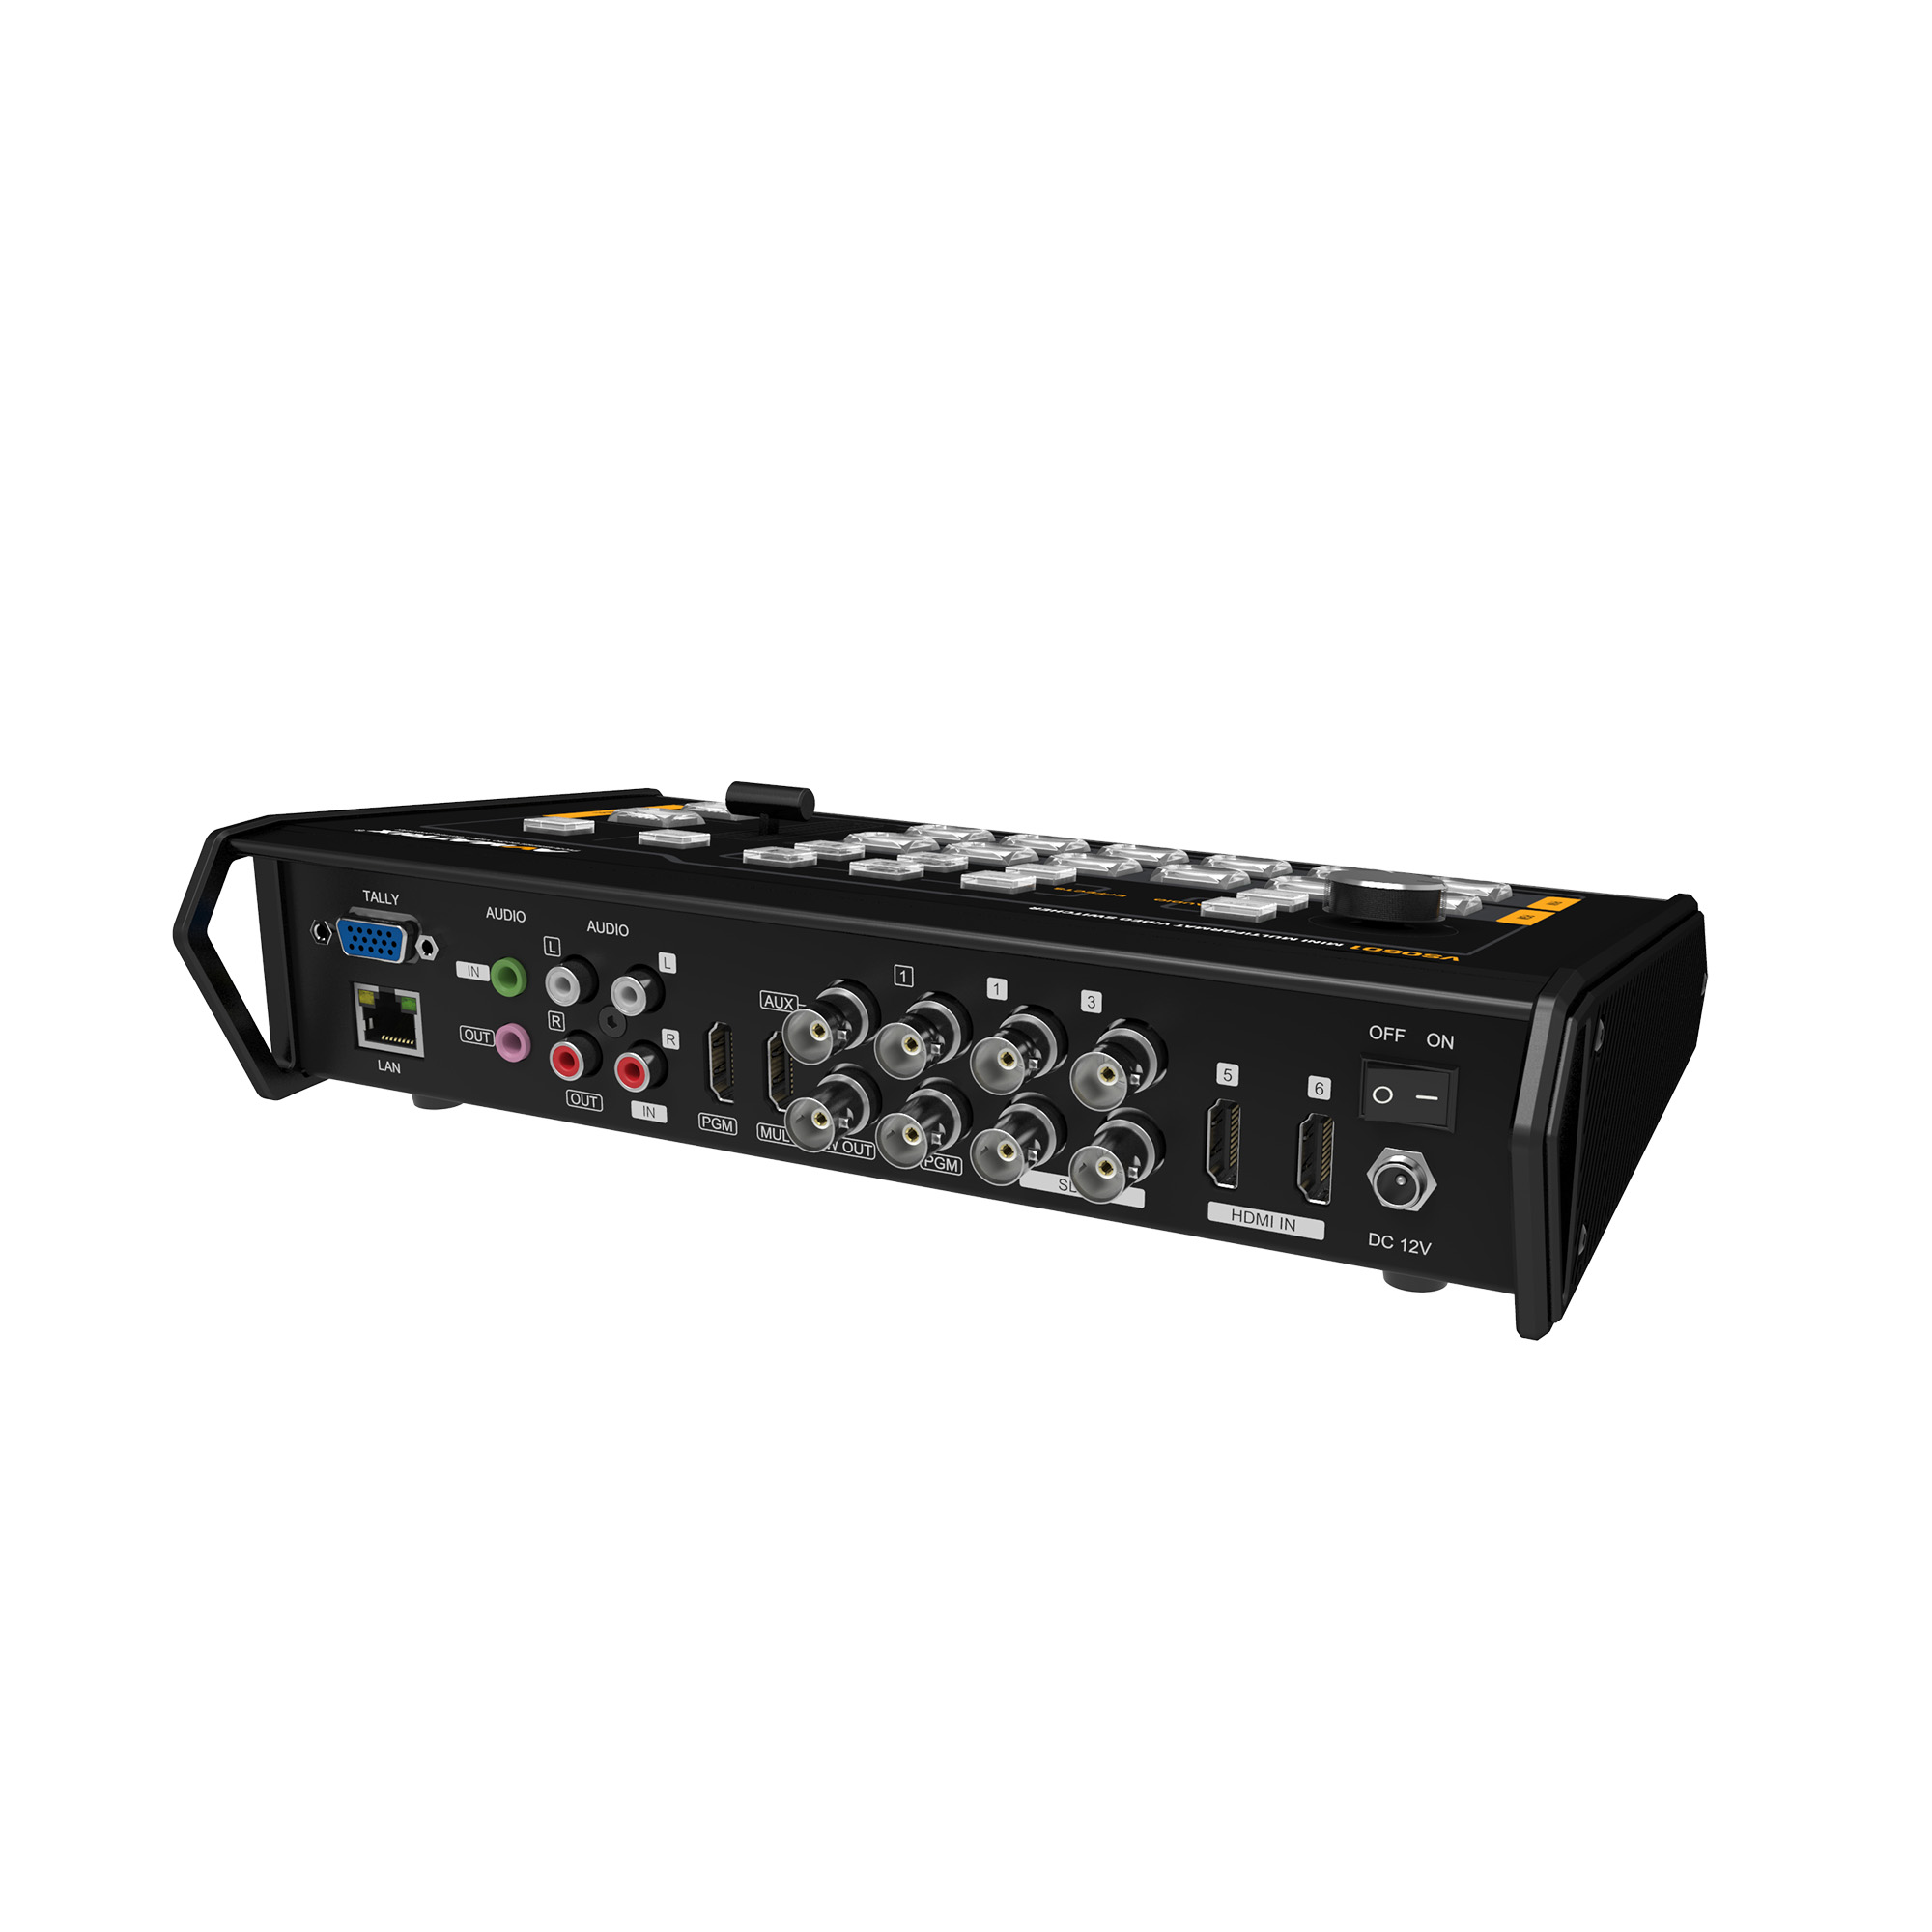 Avmatrix VS0601 Mini 6CH SDI/HDMI Multi-format Video Switcher with GPIO Interface for Live Tally System